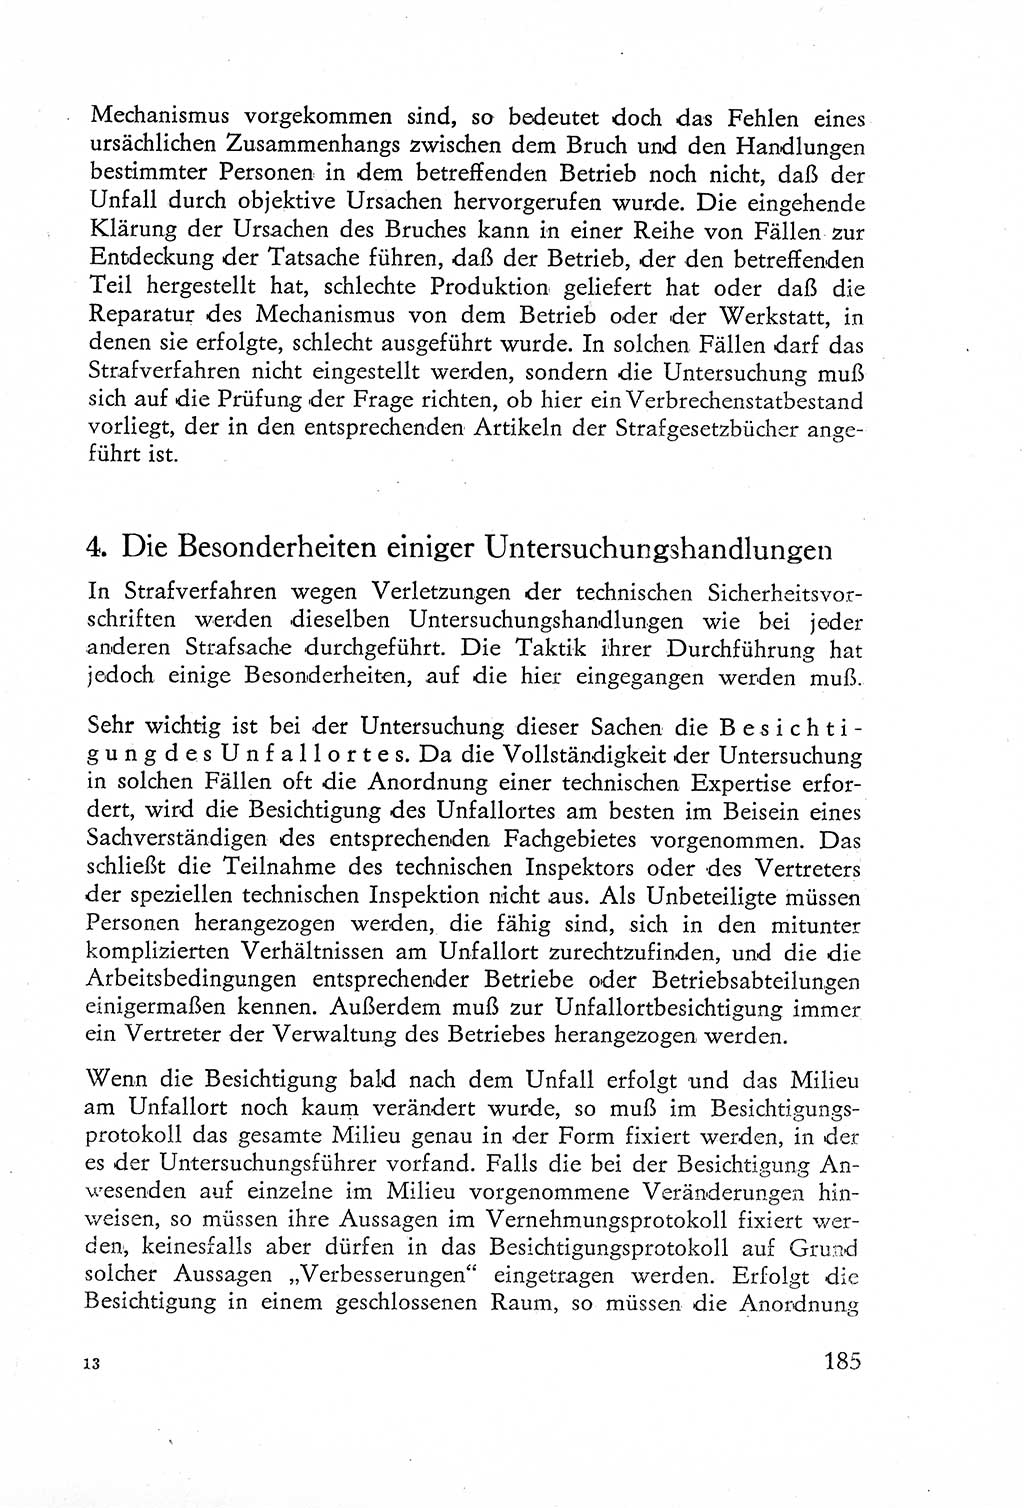 Die Untersuchung einzelner Verbrechensarten [Deutsche Demokratische Republik (DDR)] 1960, Seite 185 (Unters. Verbr.-Art. DDR 1960, S. 185)